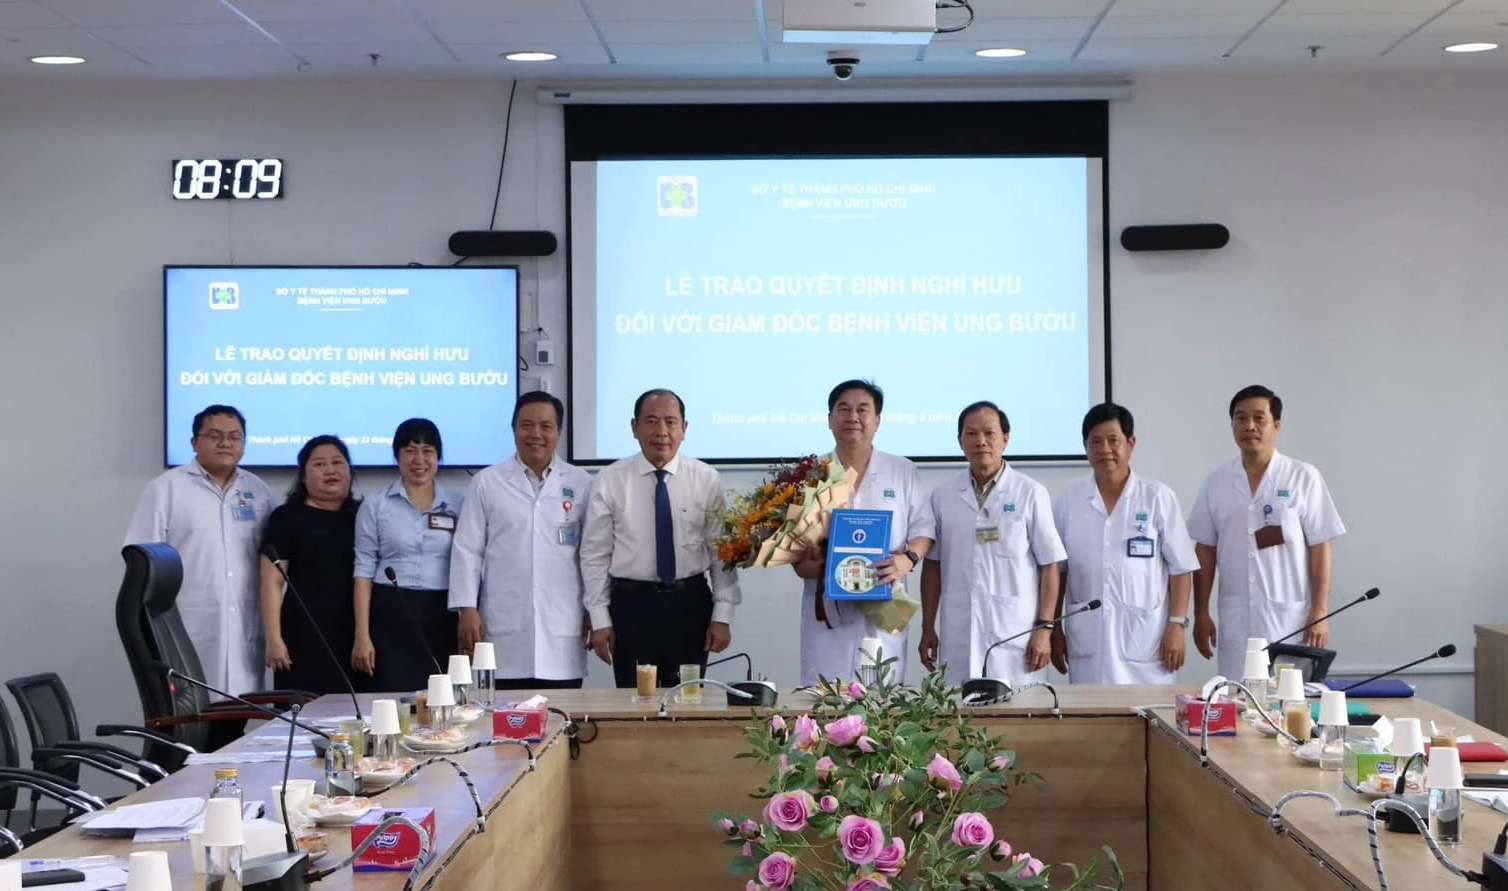 Lễ trao quyết định nhân sự Bệnh viện Ung bướu TP.HCM ngày 23.4